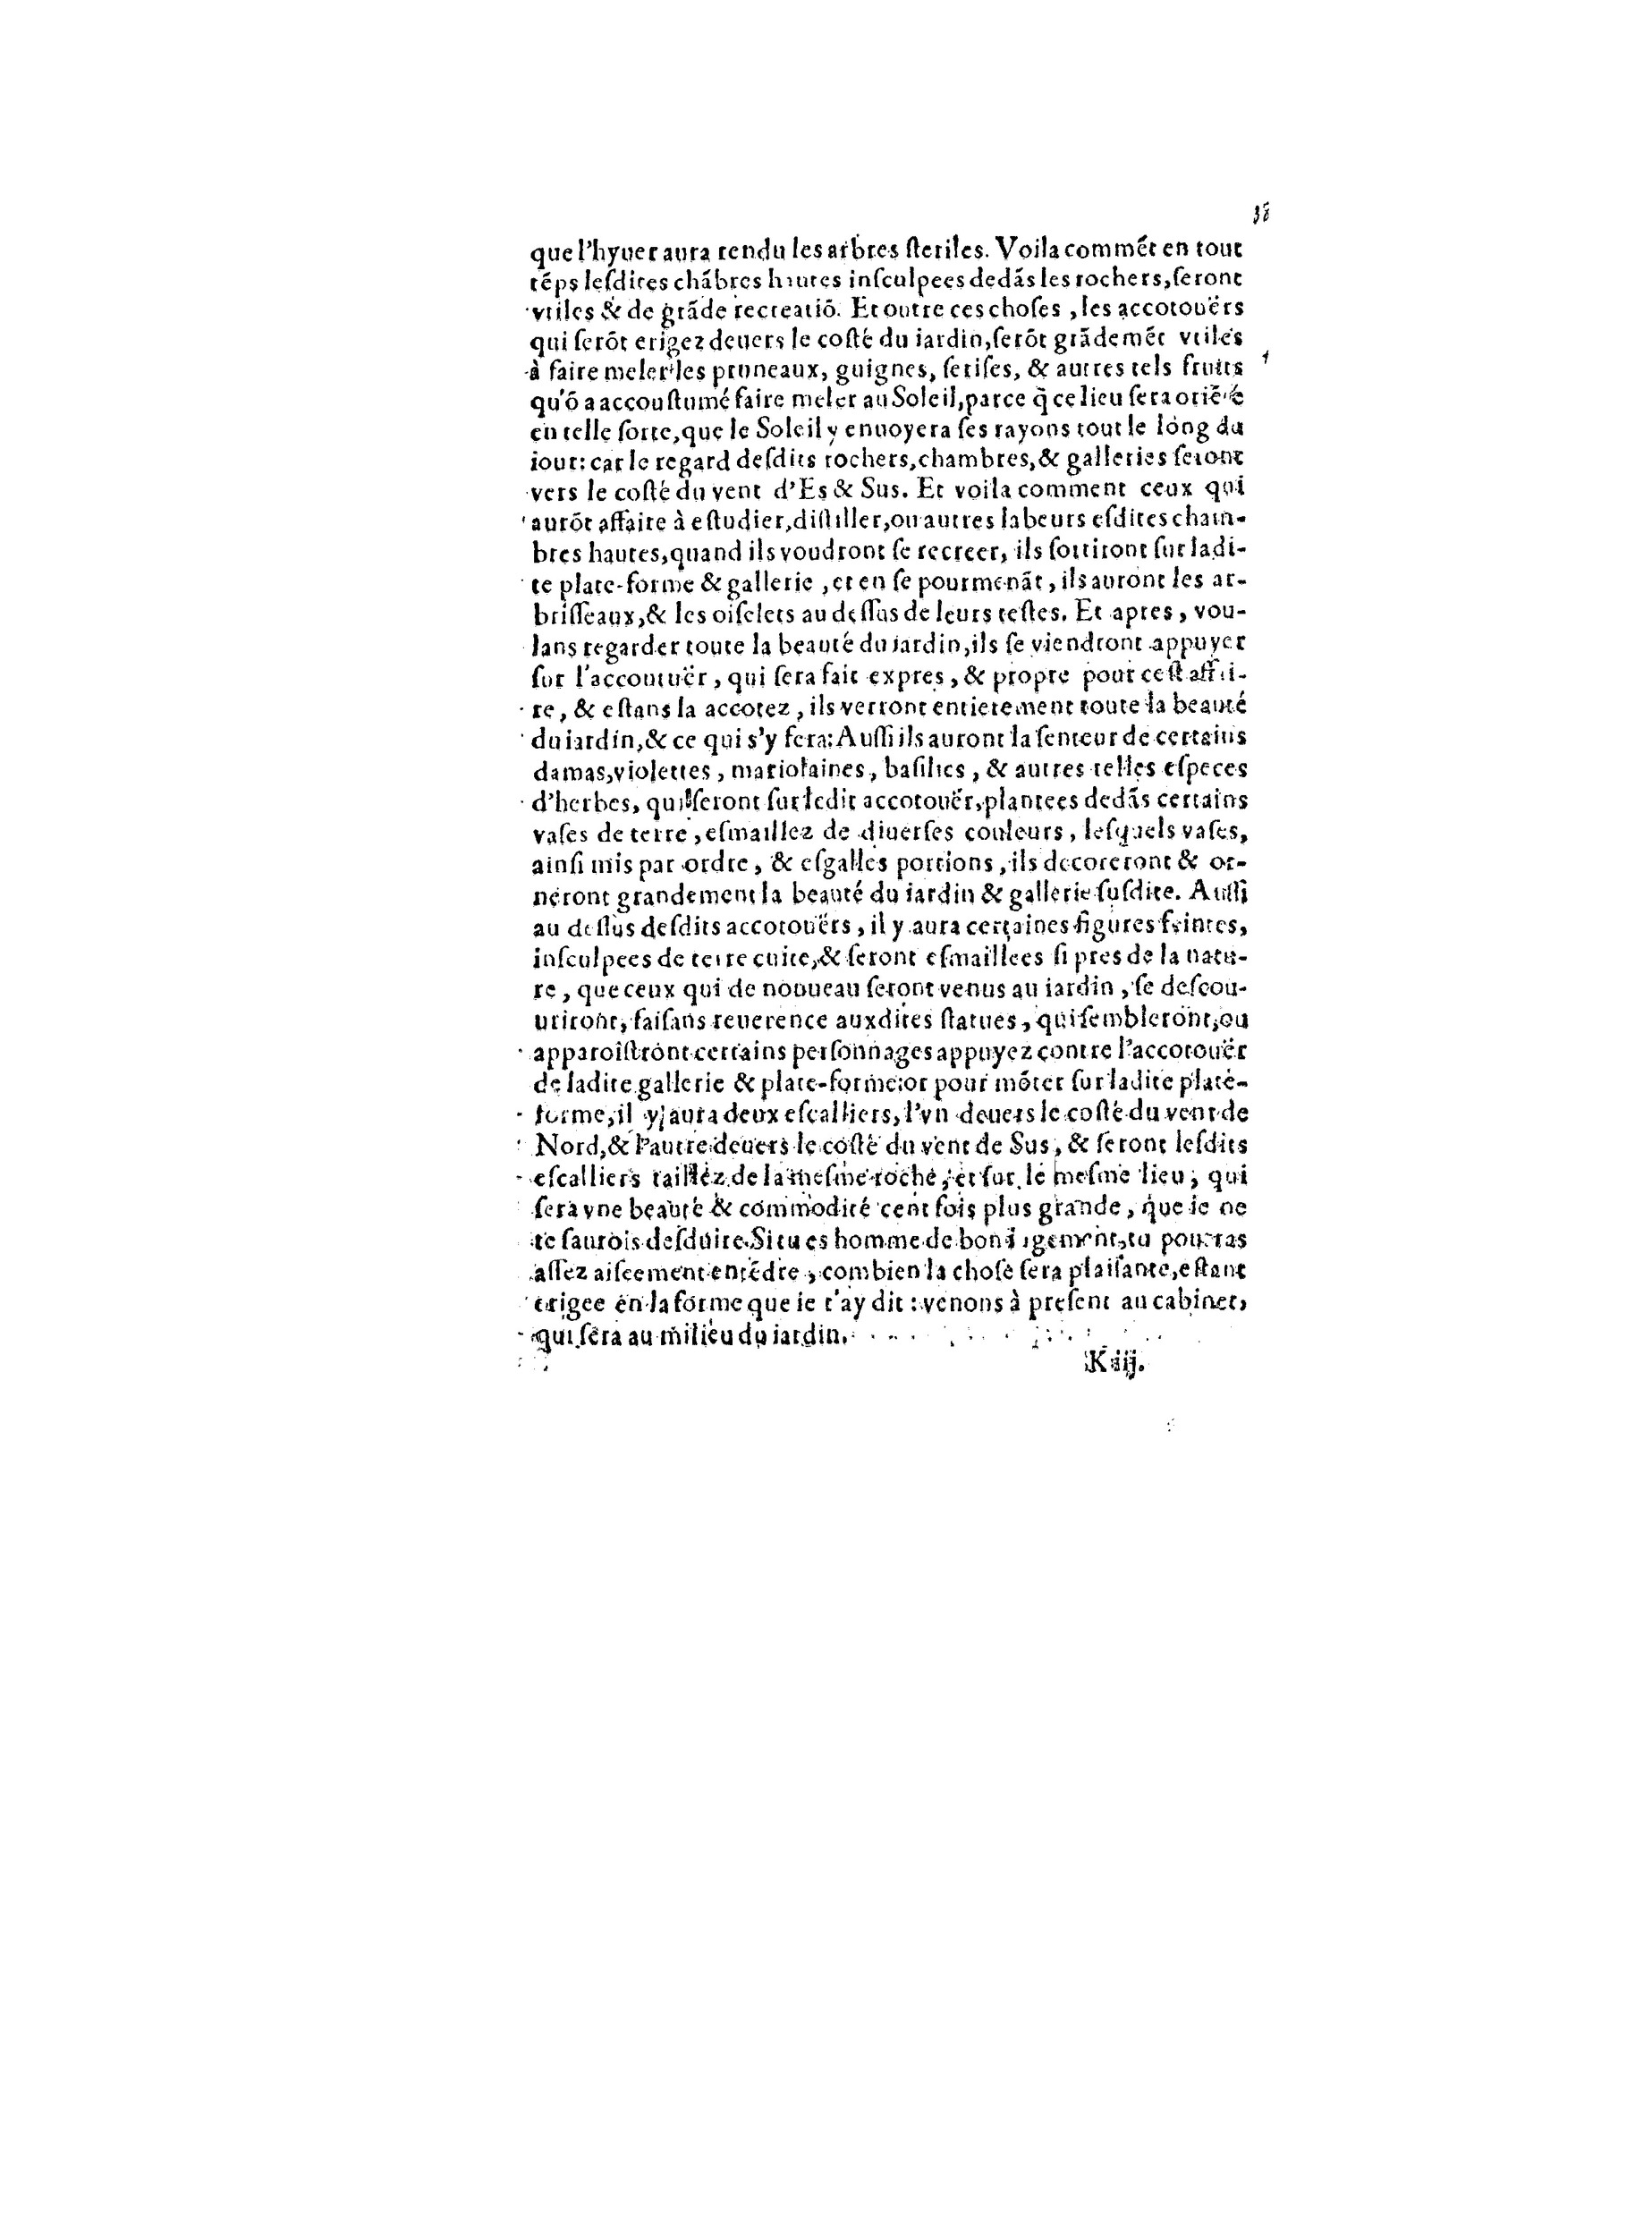 1563 Recepte veritable Berton_BNF_Page_080.jpg